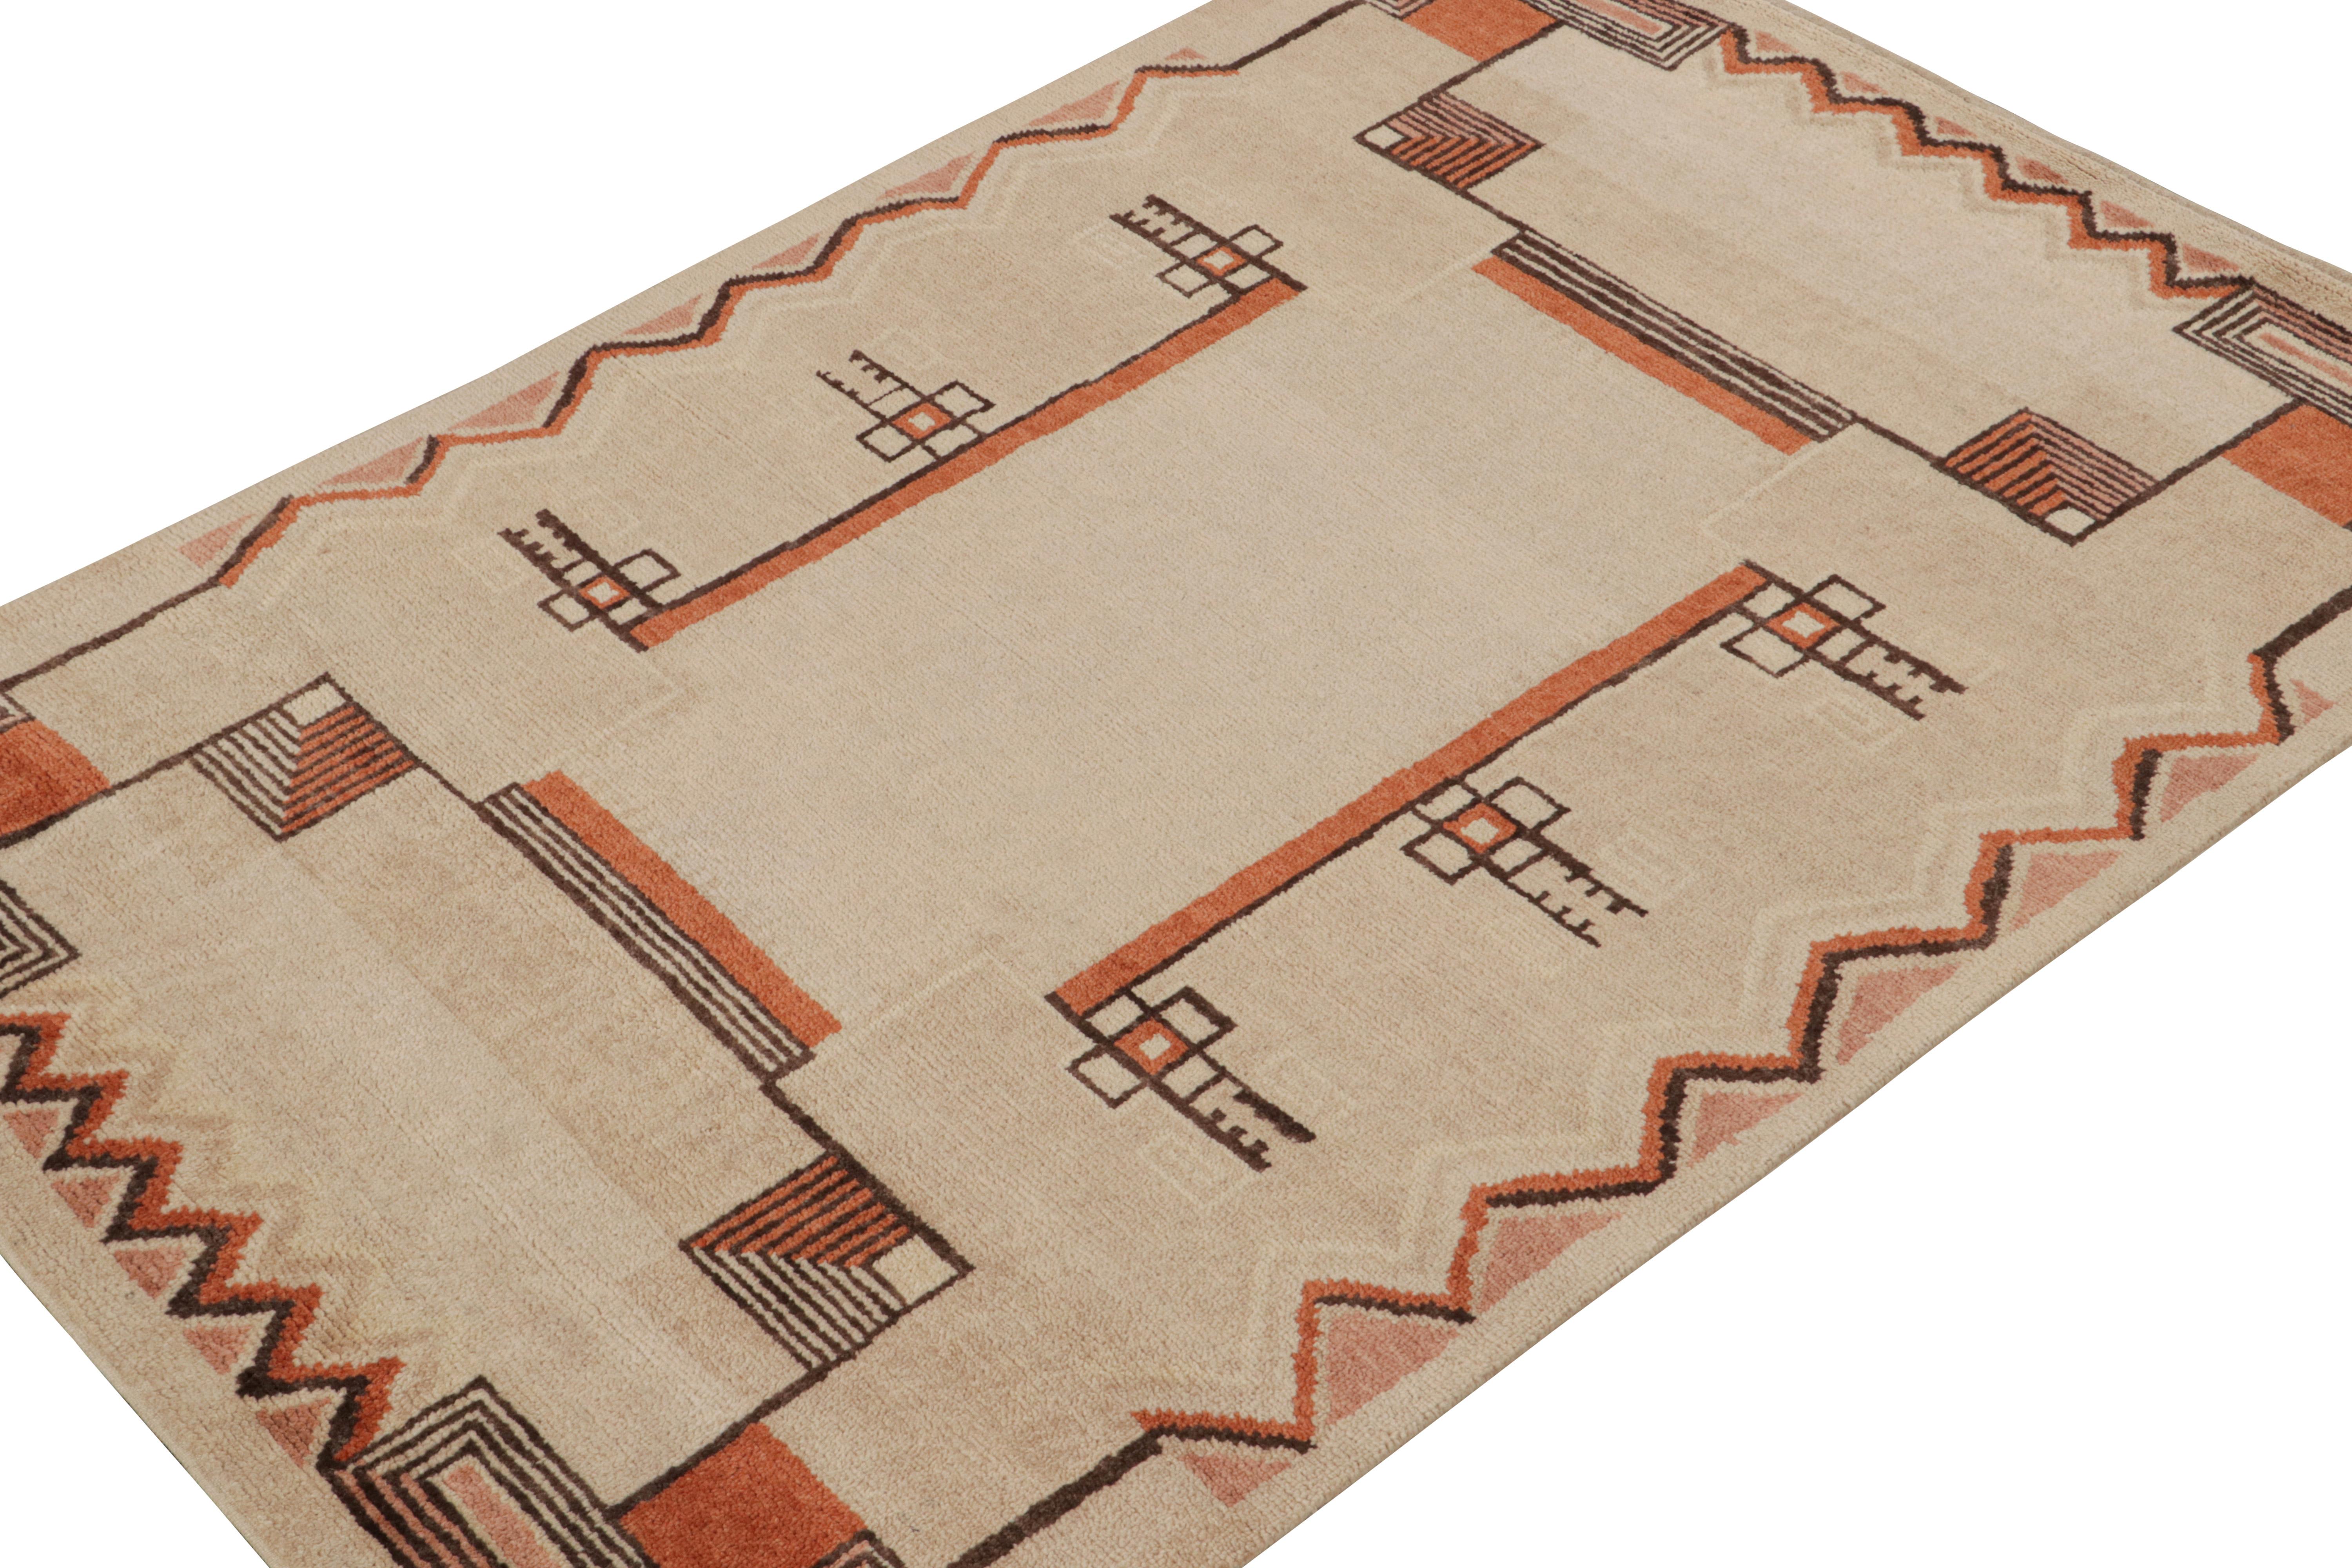 Noué à la main en laine, un tapis 5x7 de la collection Art Deco de Rug & Kilim.

Sur le design :

Cette pièce est un tapis français de style Art déco, avec des motifs géométriques immaculés dans les tons beige, marron et orange. Un œil attentif